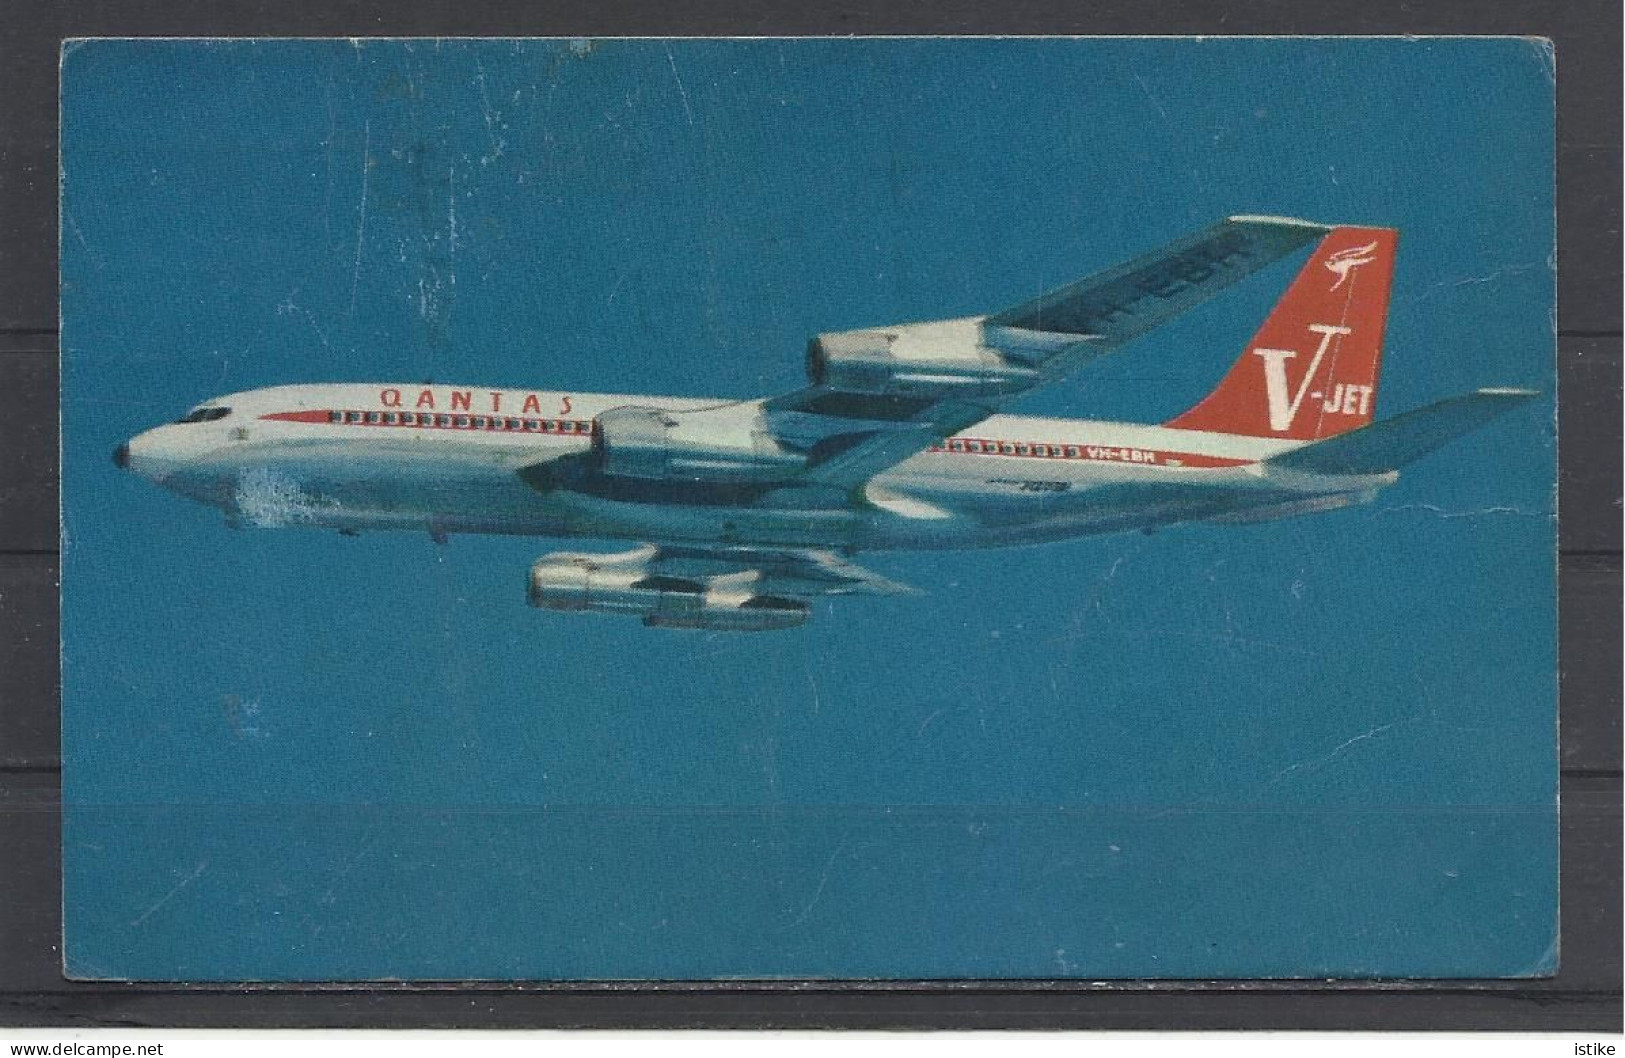 Australia, Qantas,, Boeing 707 V-Jet,, 1964. - 1946-....: Era Moderna